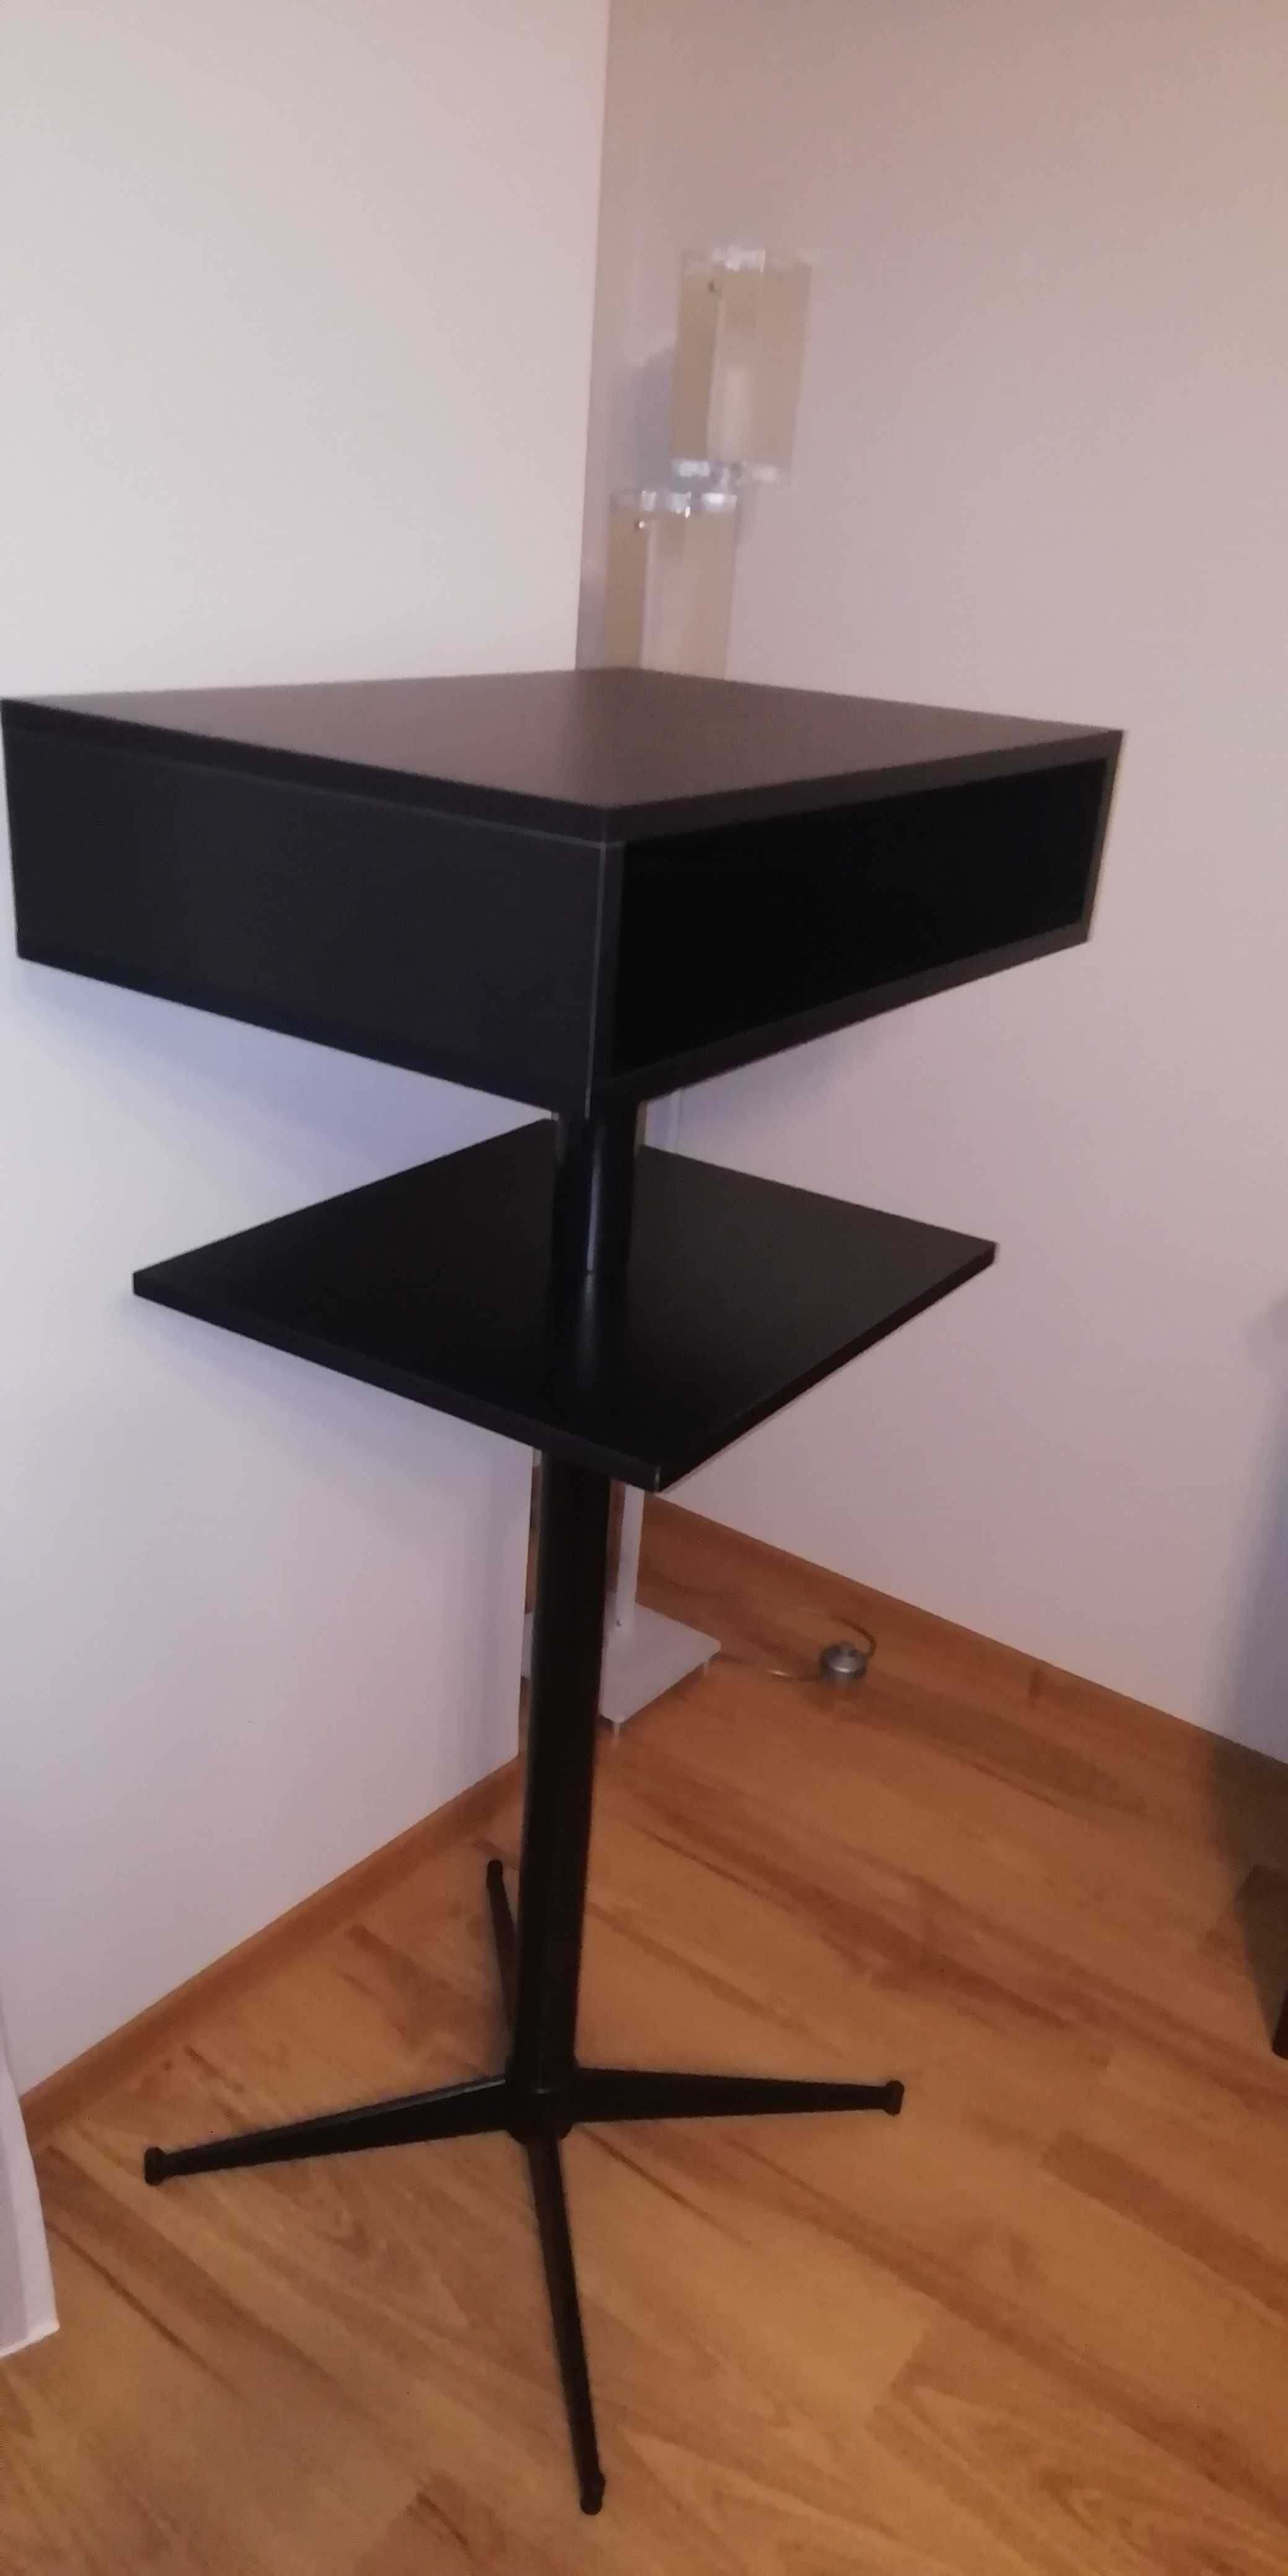 Stojak / stolik pod telewizor - wysoki solidny